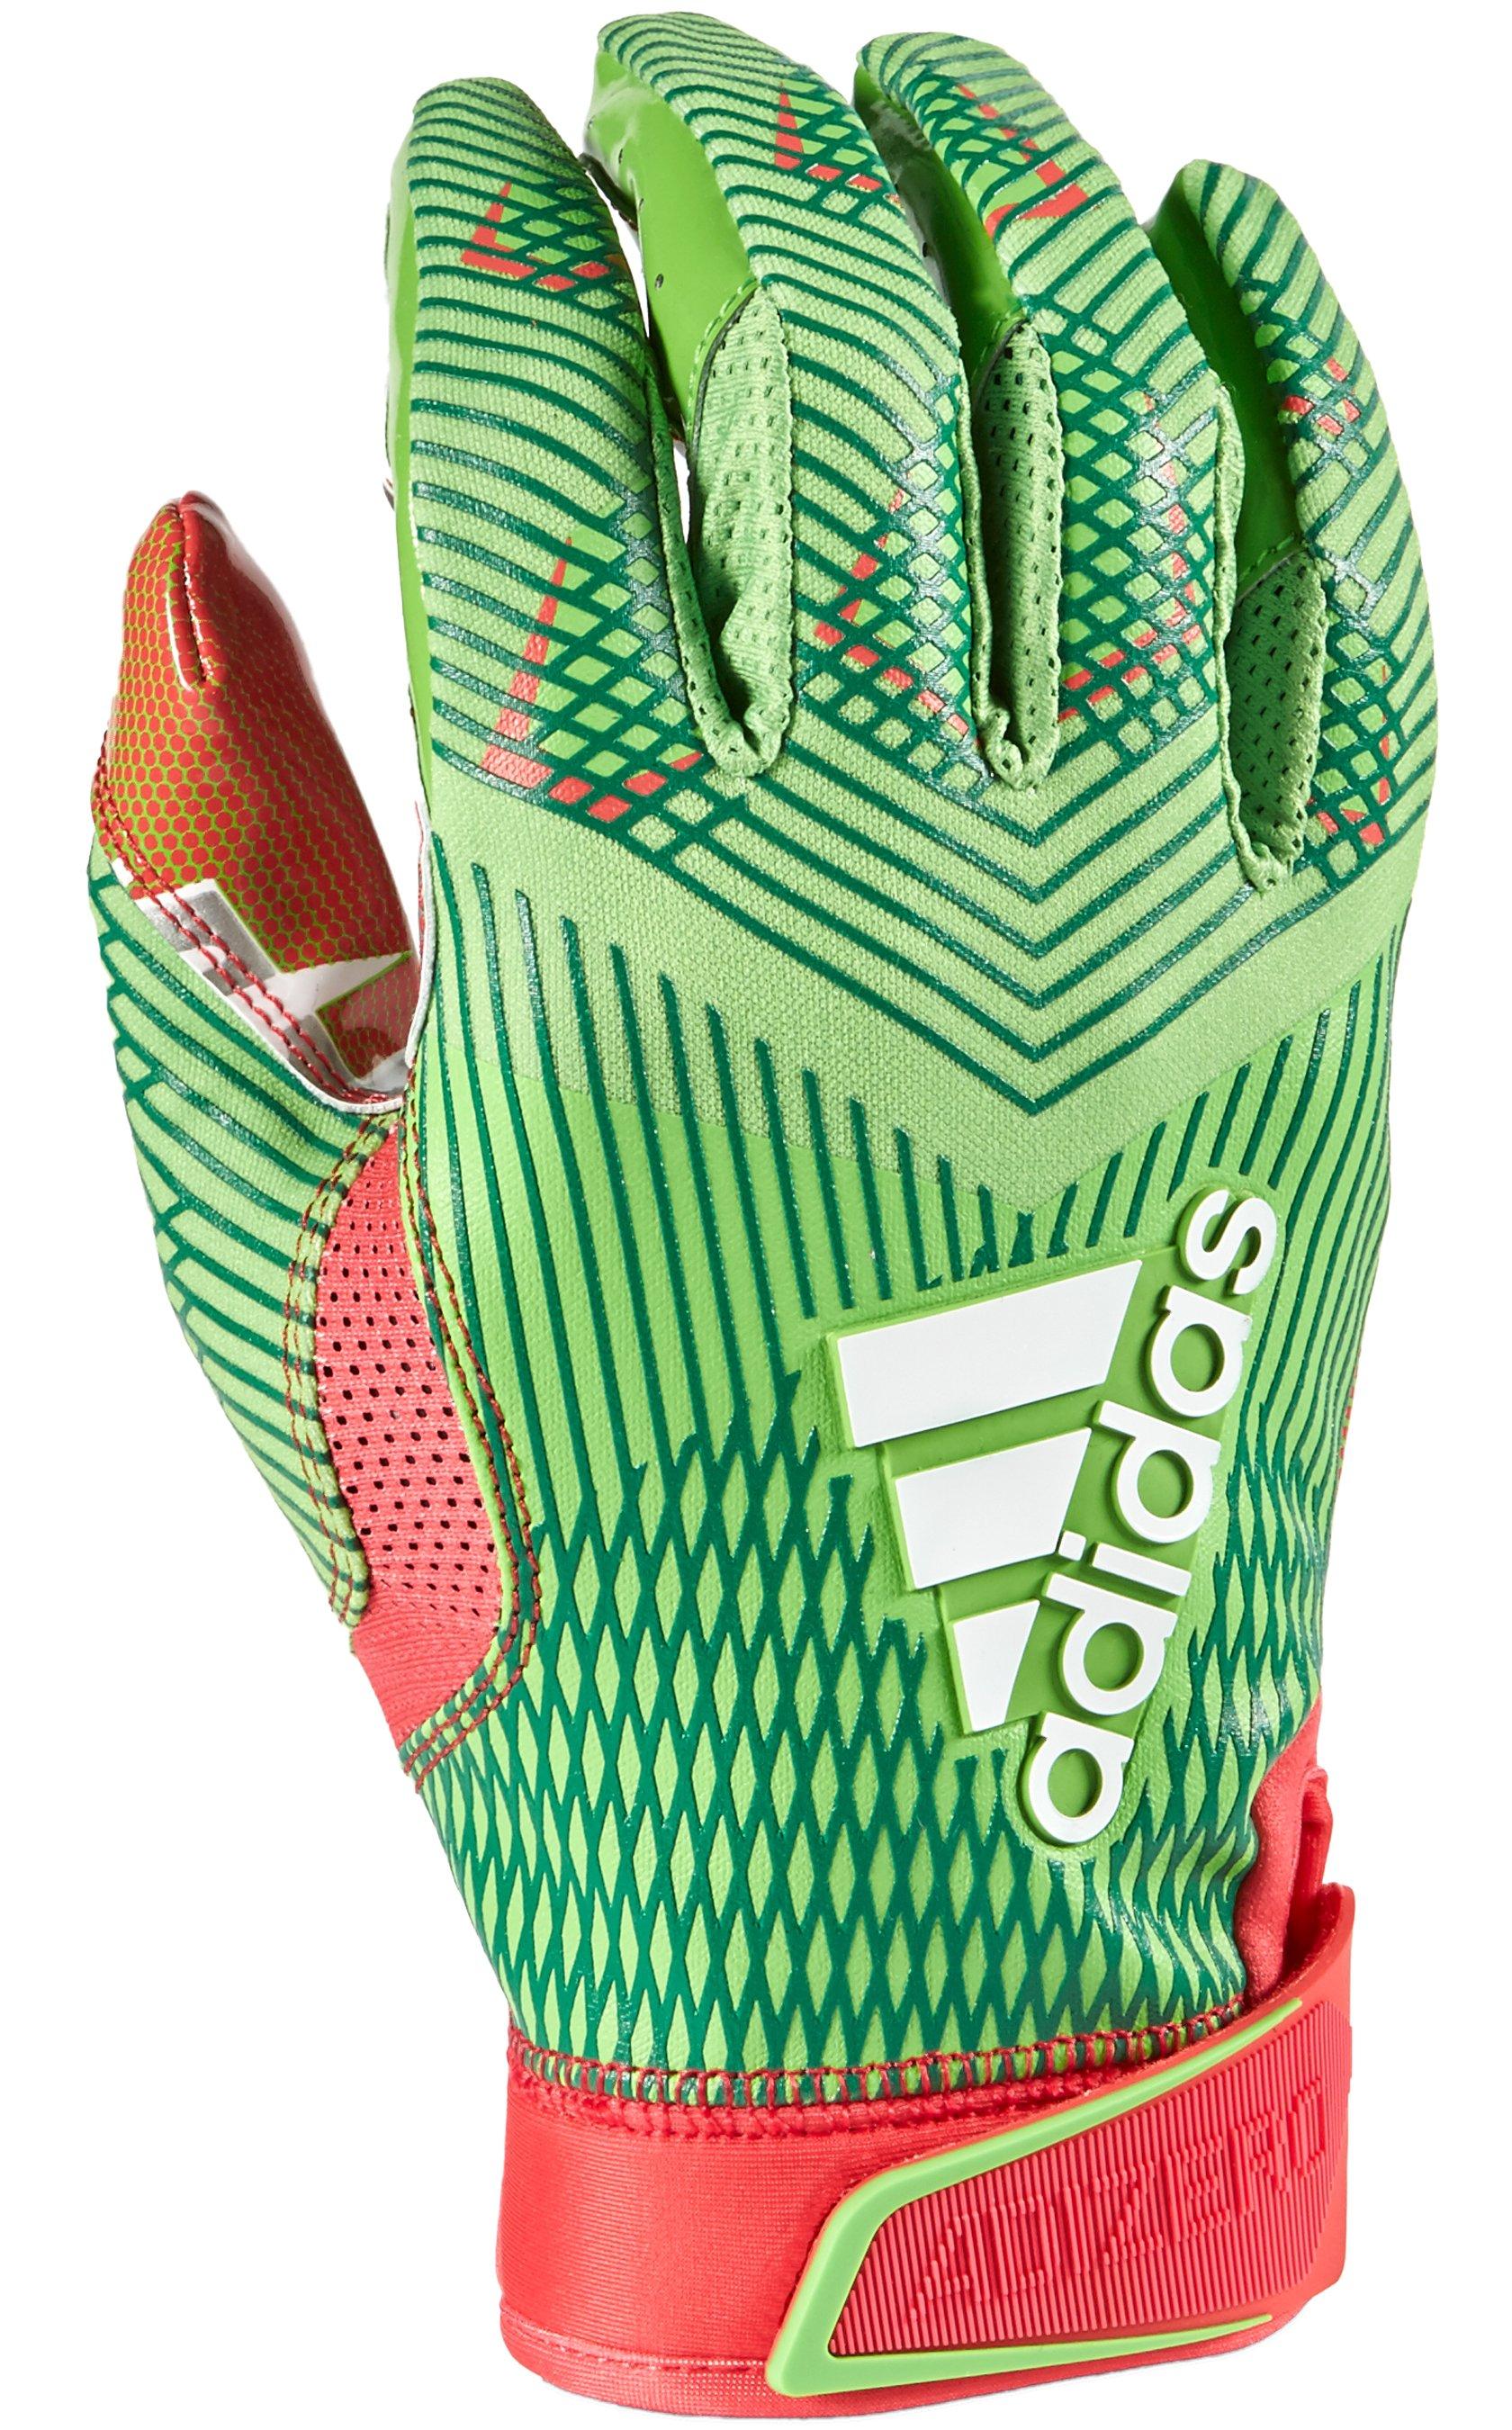 adidas wide receiver gloves 